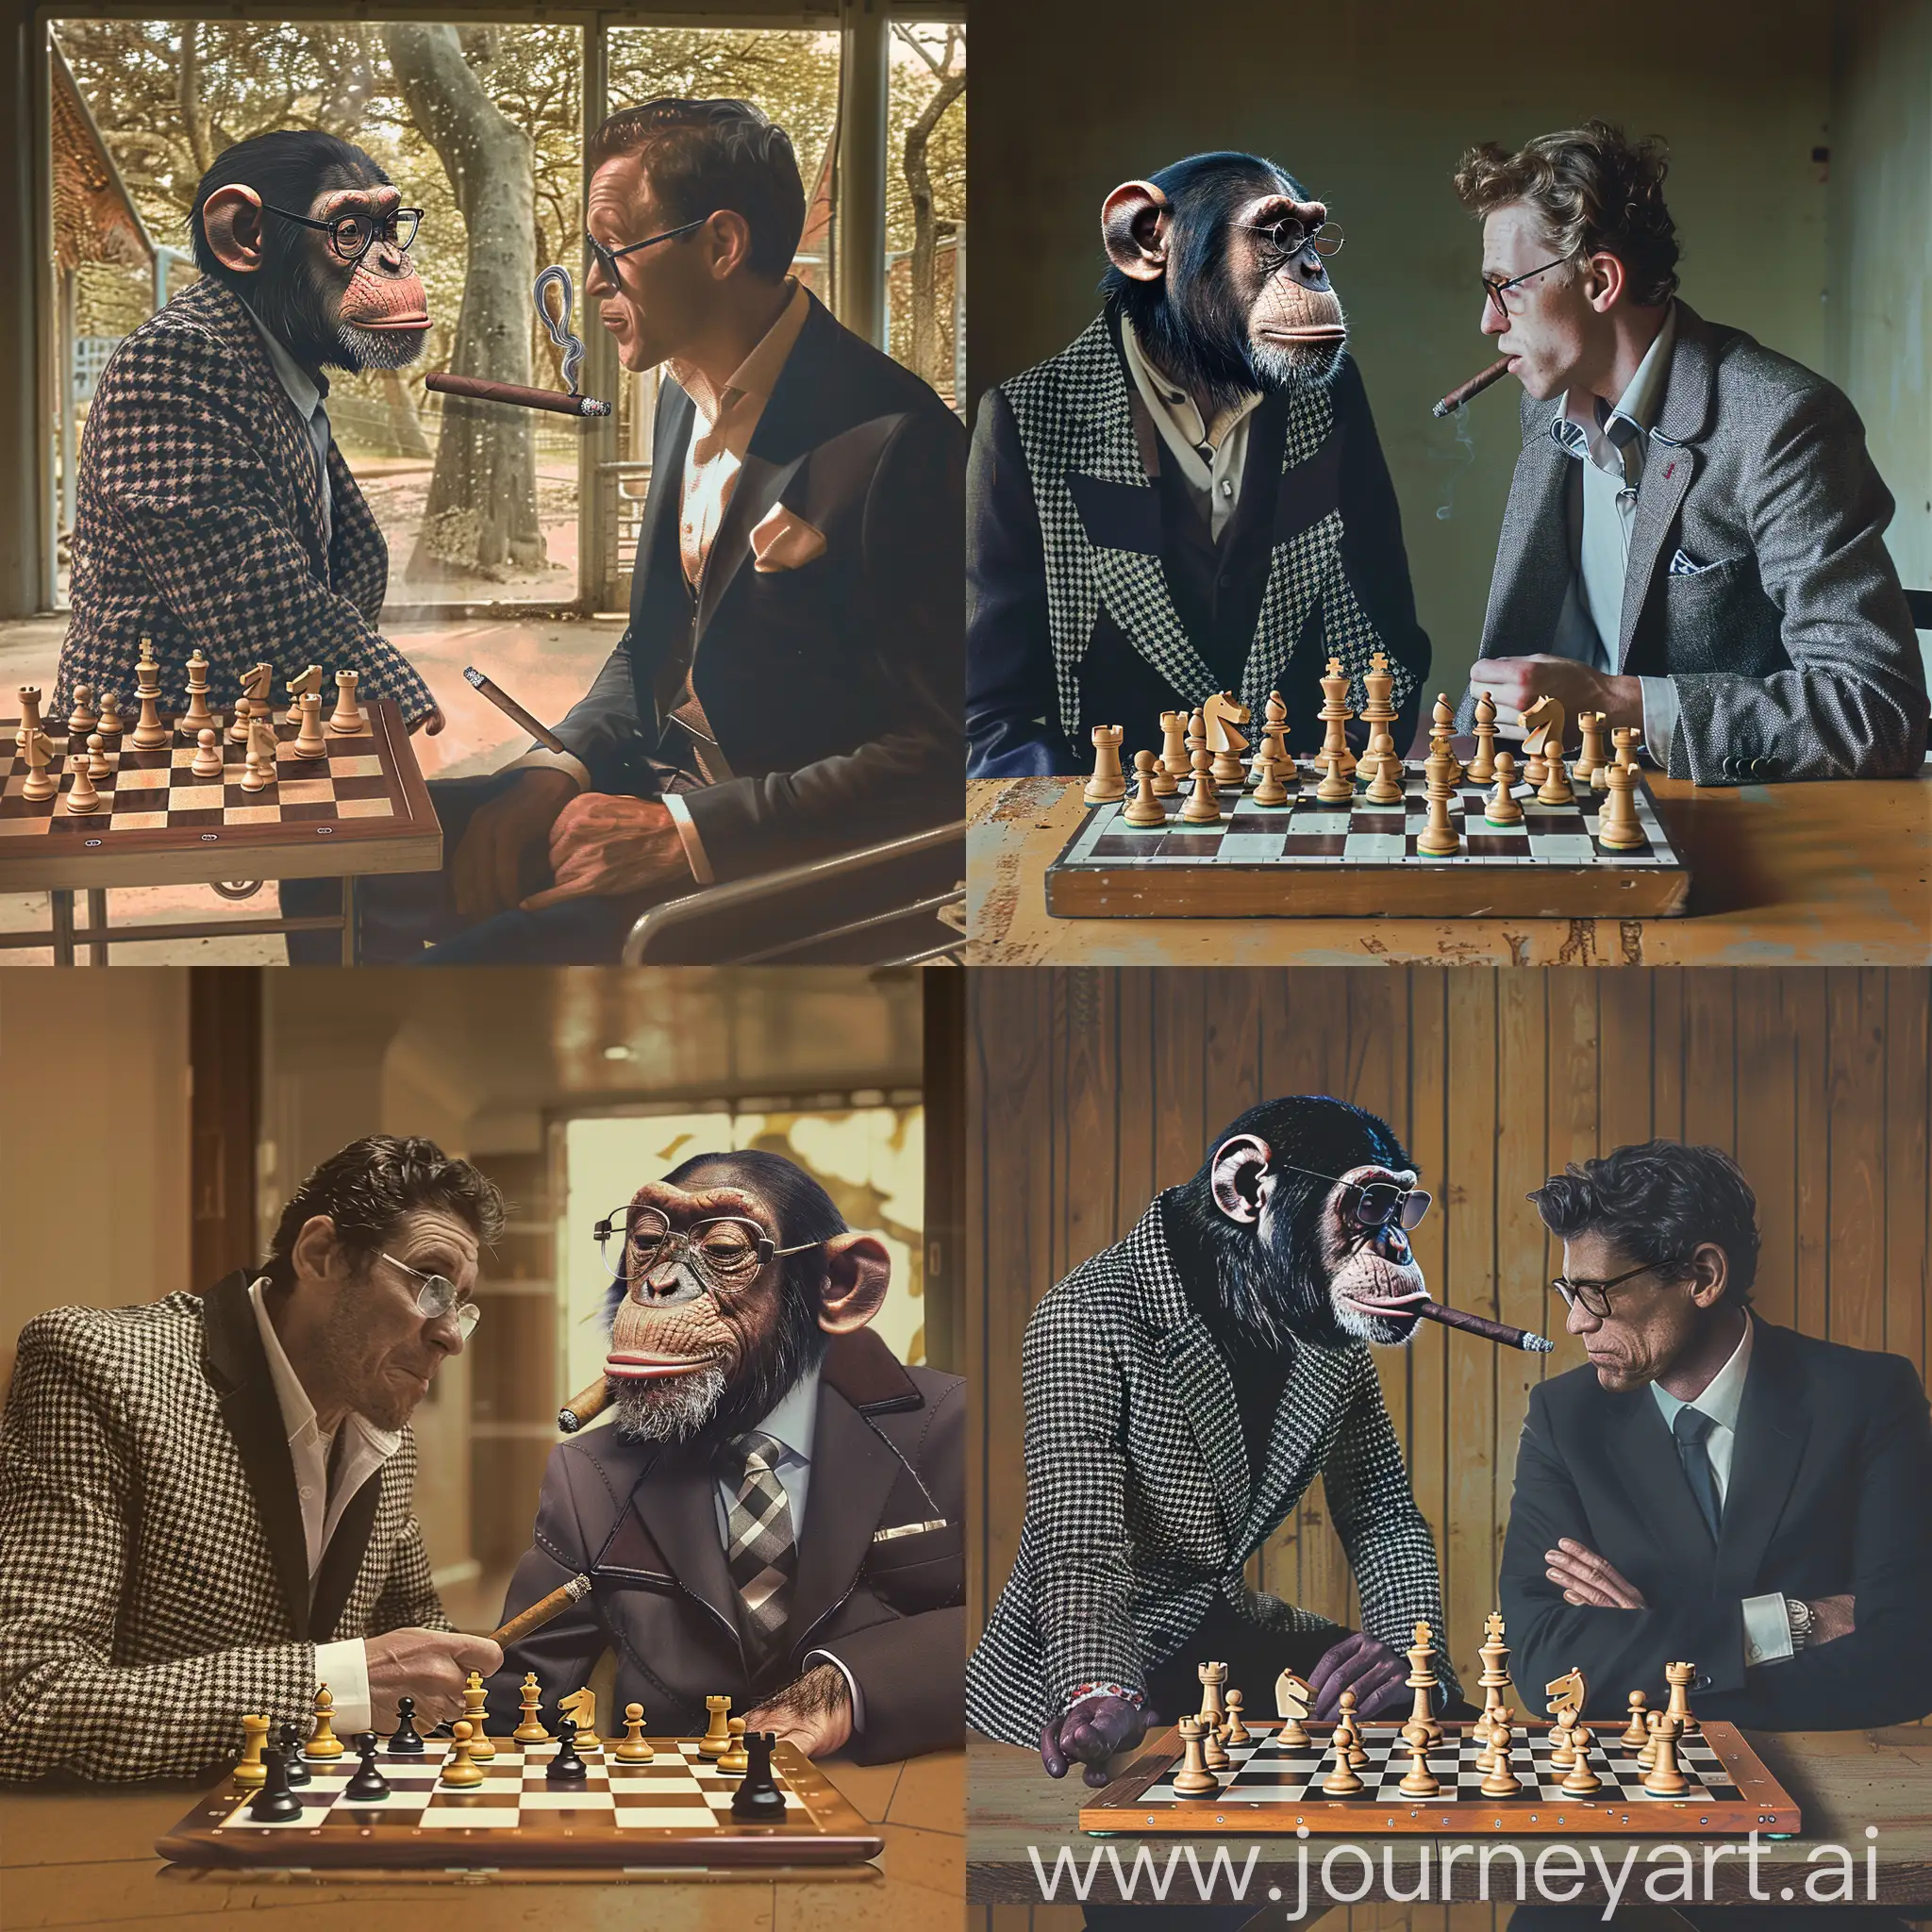 Парень сидит в классическом костюме в зоопарке. перед ним стоит шахматная доска с шахматами. Против него играет обезьяна с сигарой в клетчатой жилетке и в очках. Парень нервничает, а обезьяна надменно ухмыляется, потому что преимущество на ее стороне